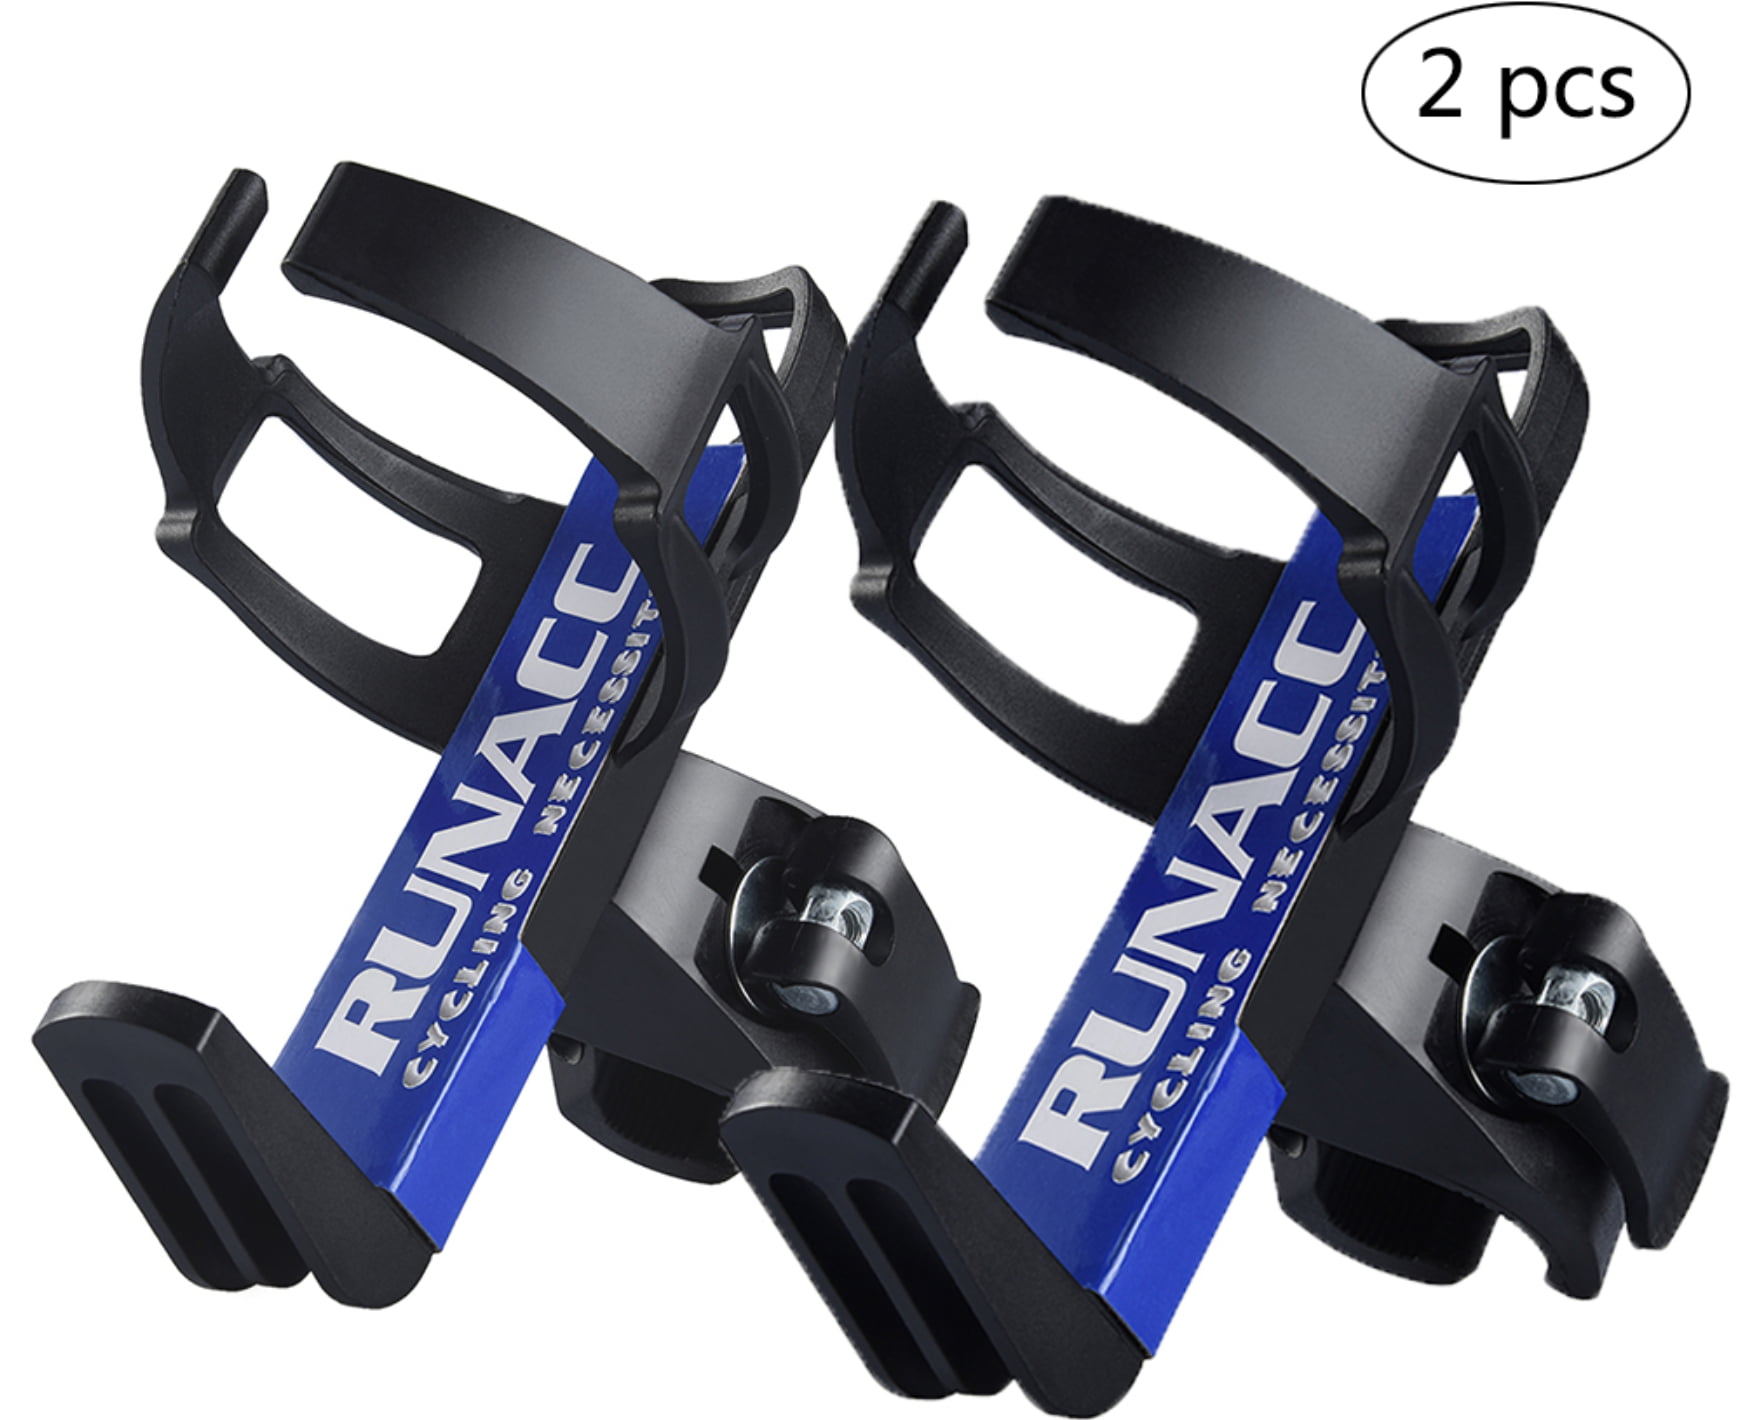 RUNACC Adjustable Bike Bicycle MTB Water Bottle Holder Rack Cage Black 